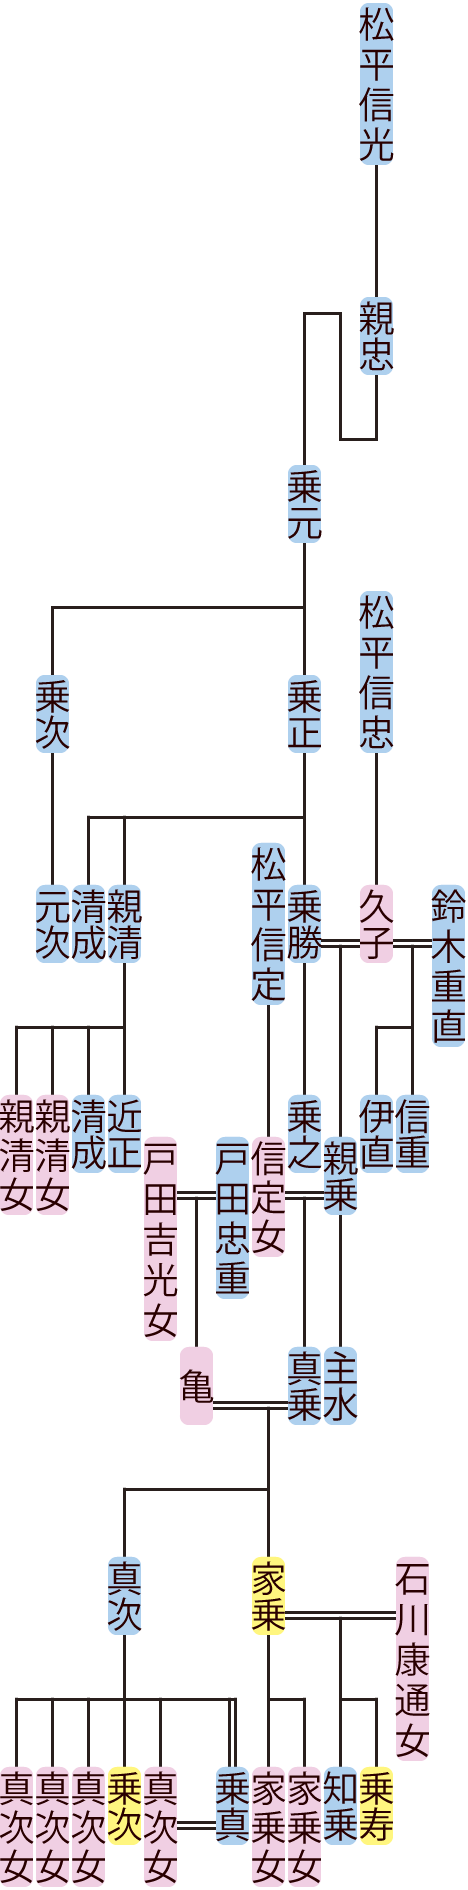 松平乗元～真乗の系図